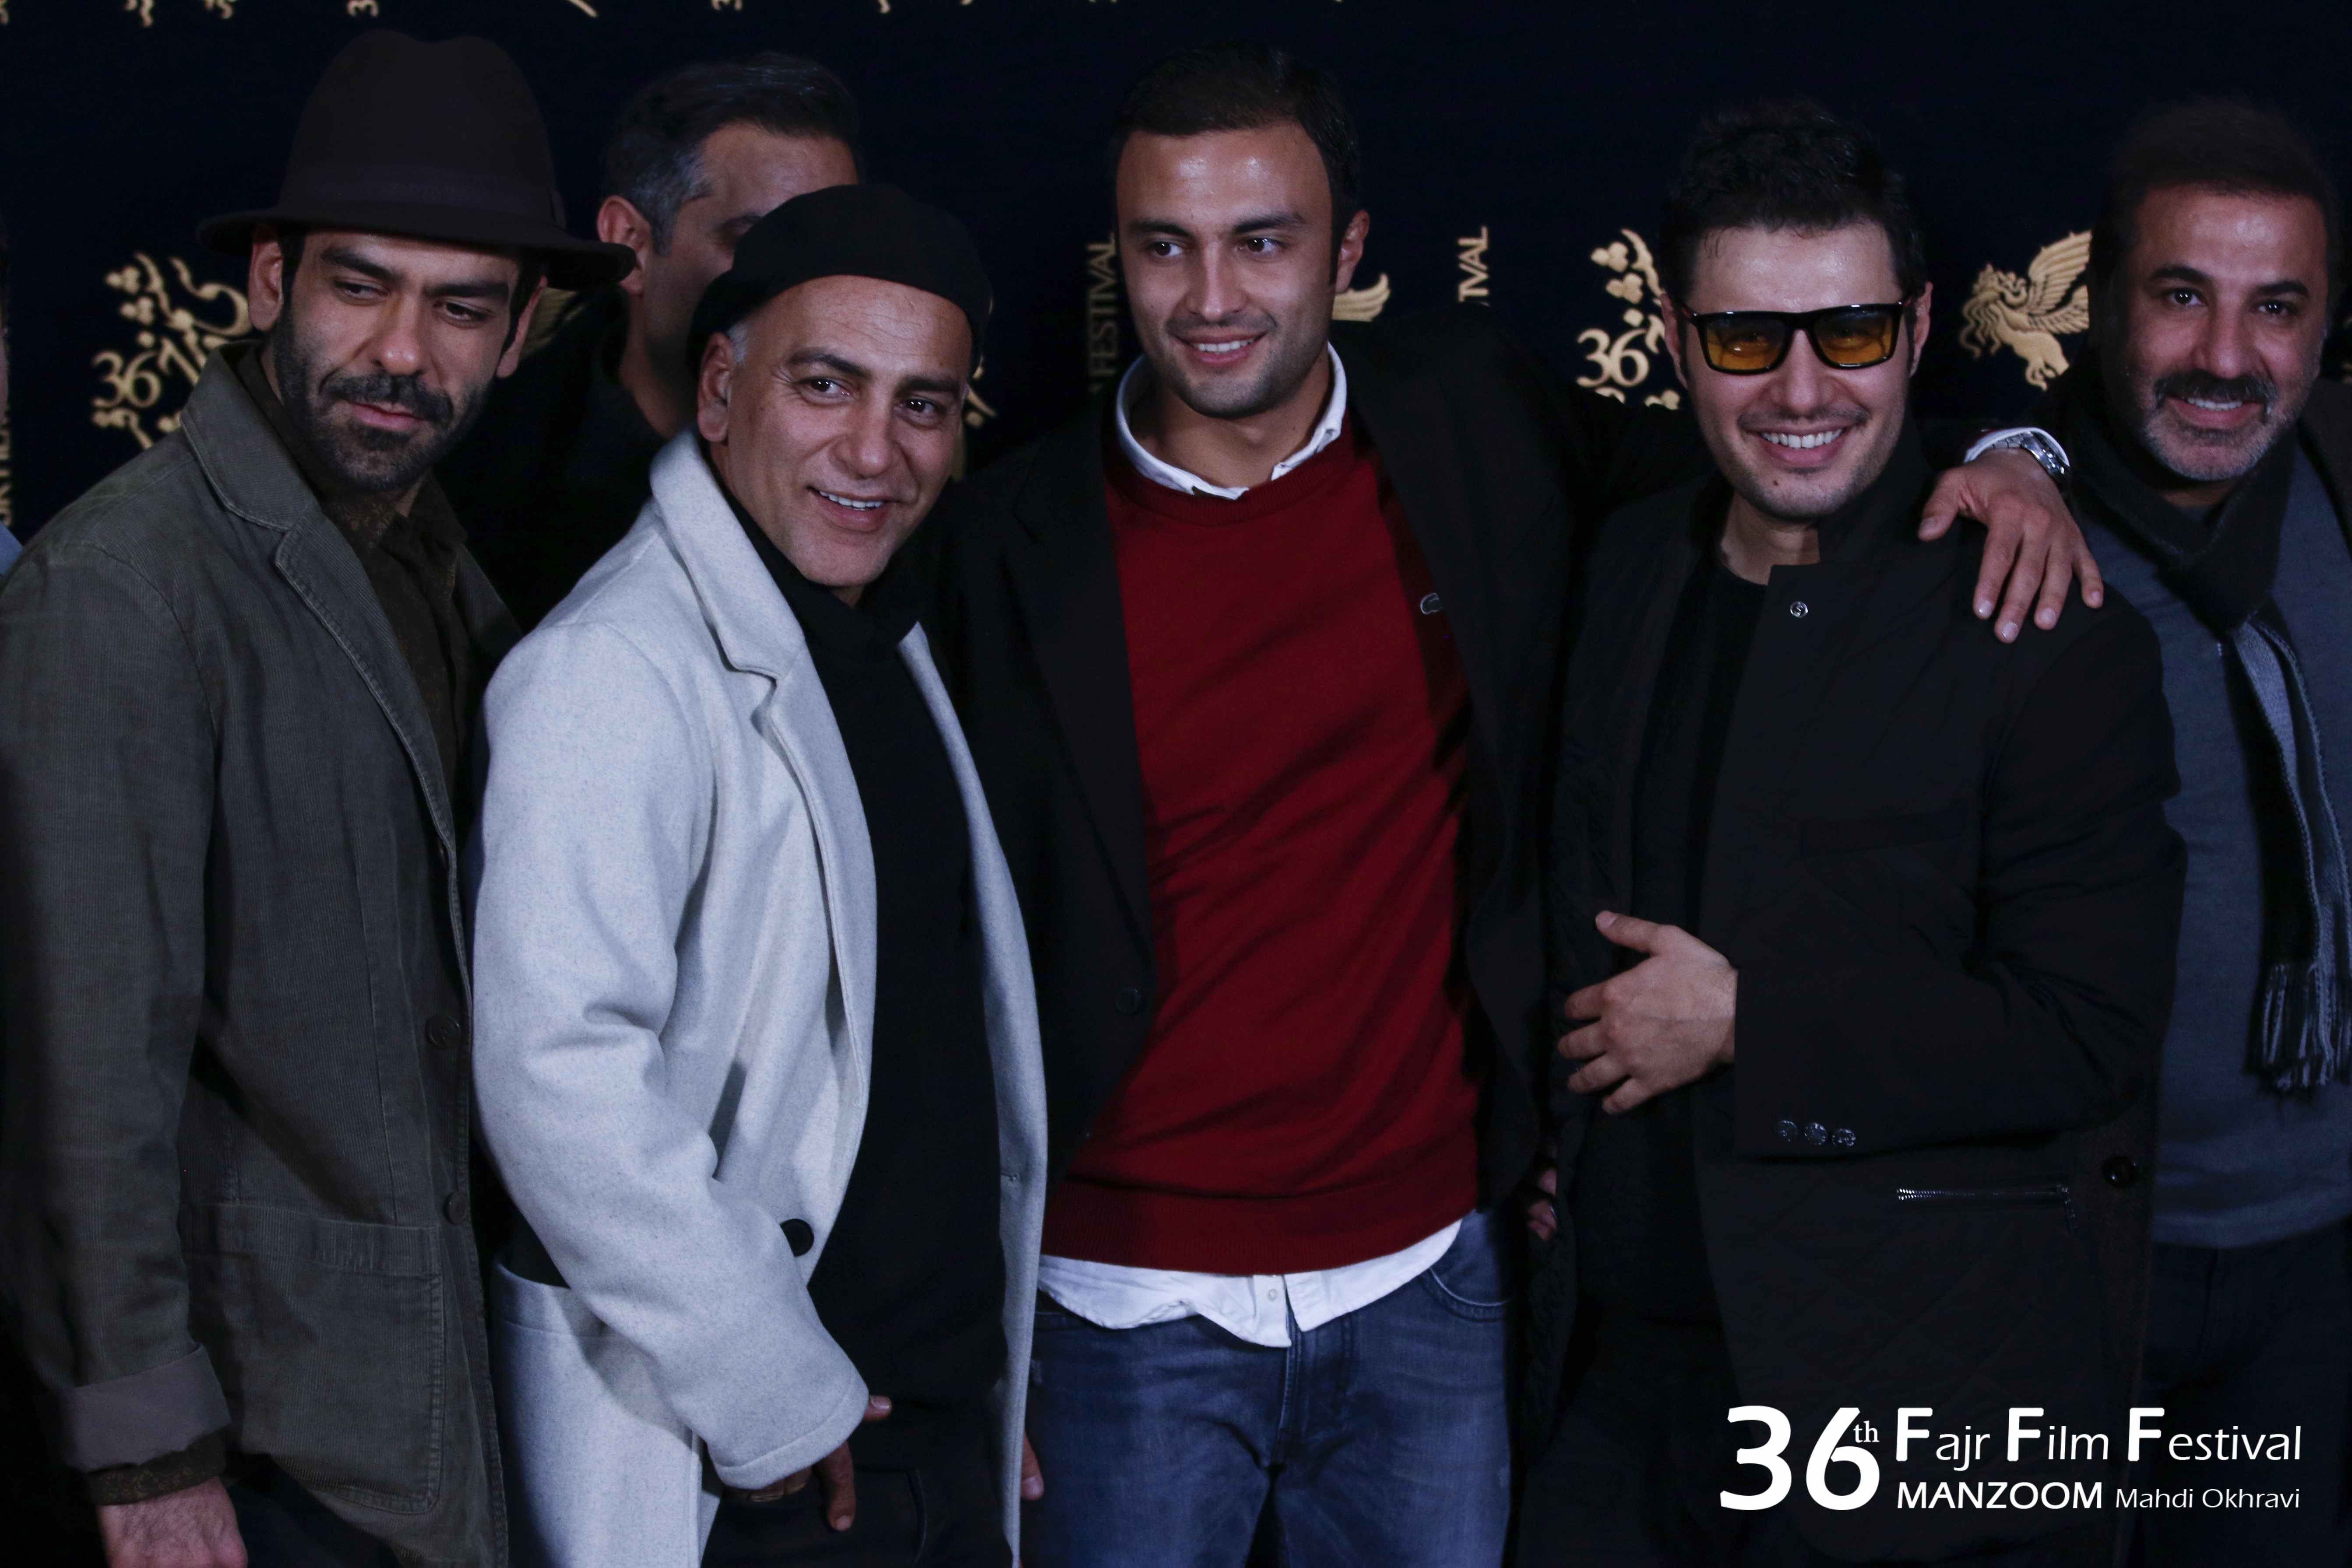 جواد عزتی در جشنواره فیلم سینمایی تنگه ابوقریب به همراه امیر جدیدی، علی سلیمانی و حمیدرضا آذرنگ